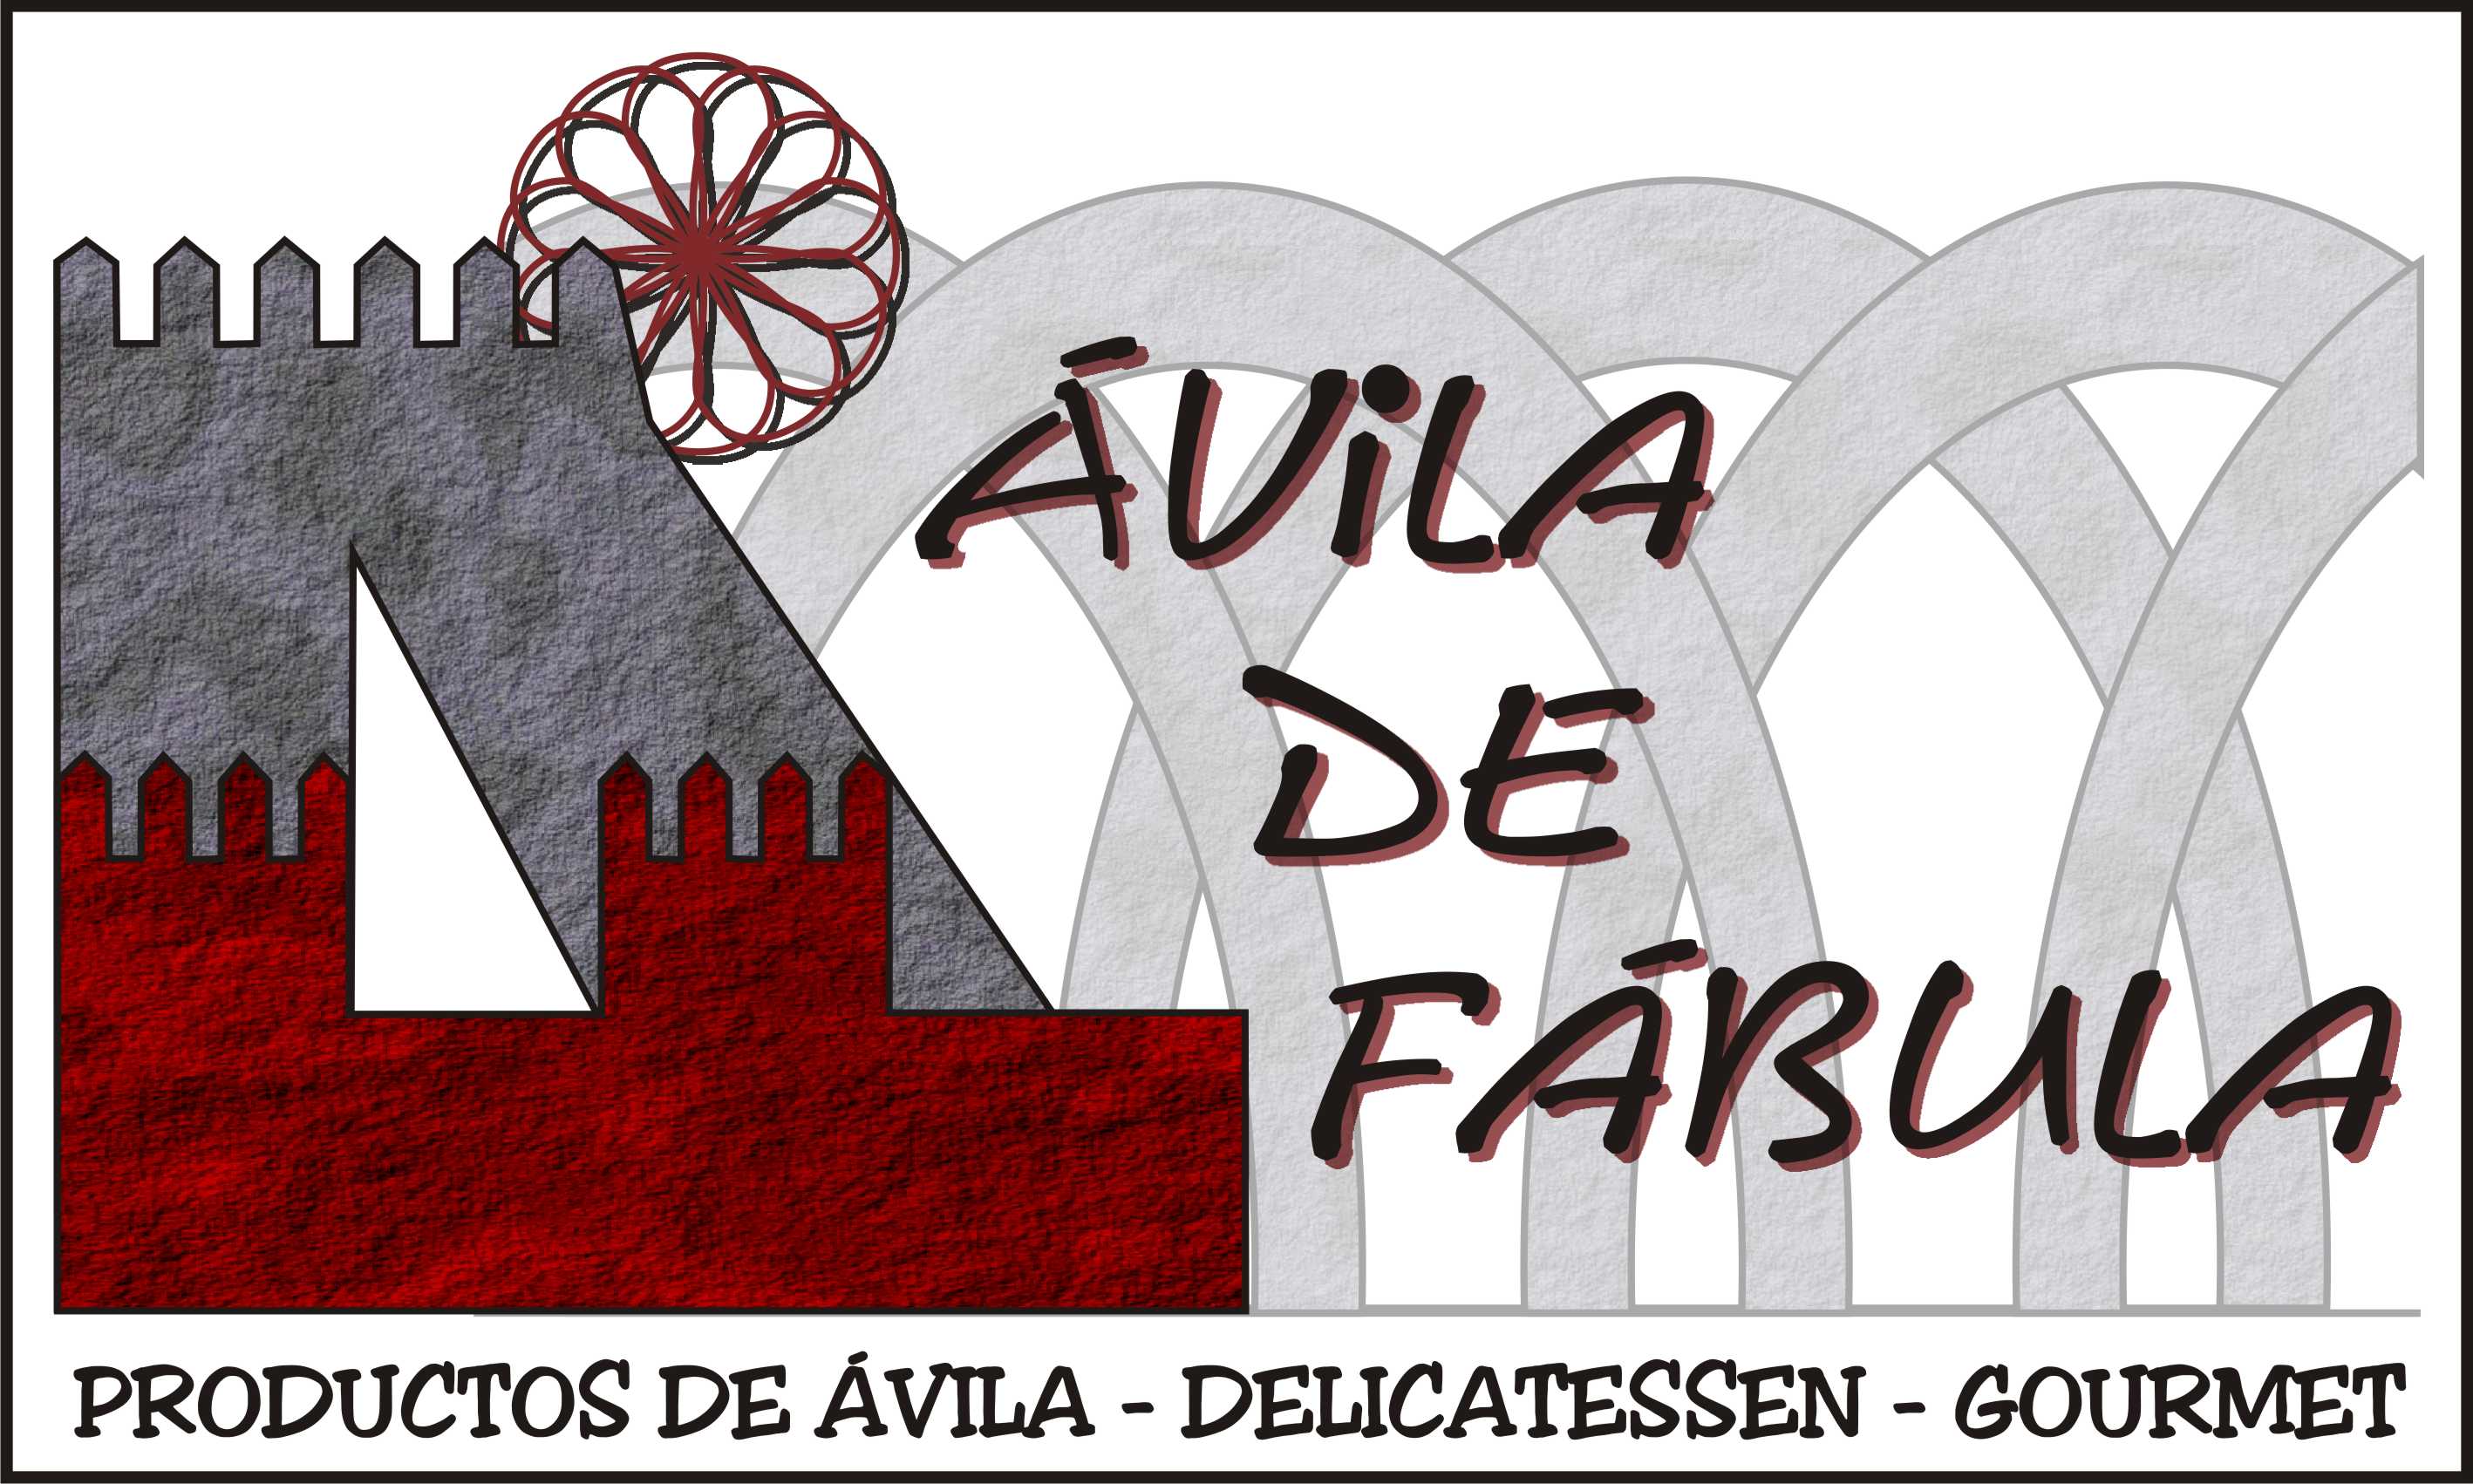 Logotipo de Avila de Fabula. Productos de 
			vila, Delicatessen y Gourmet.